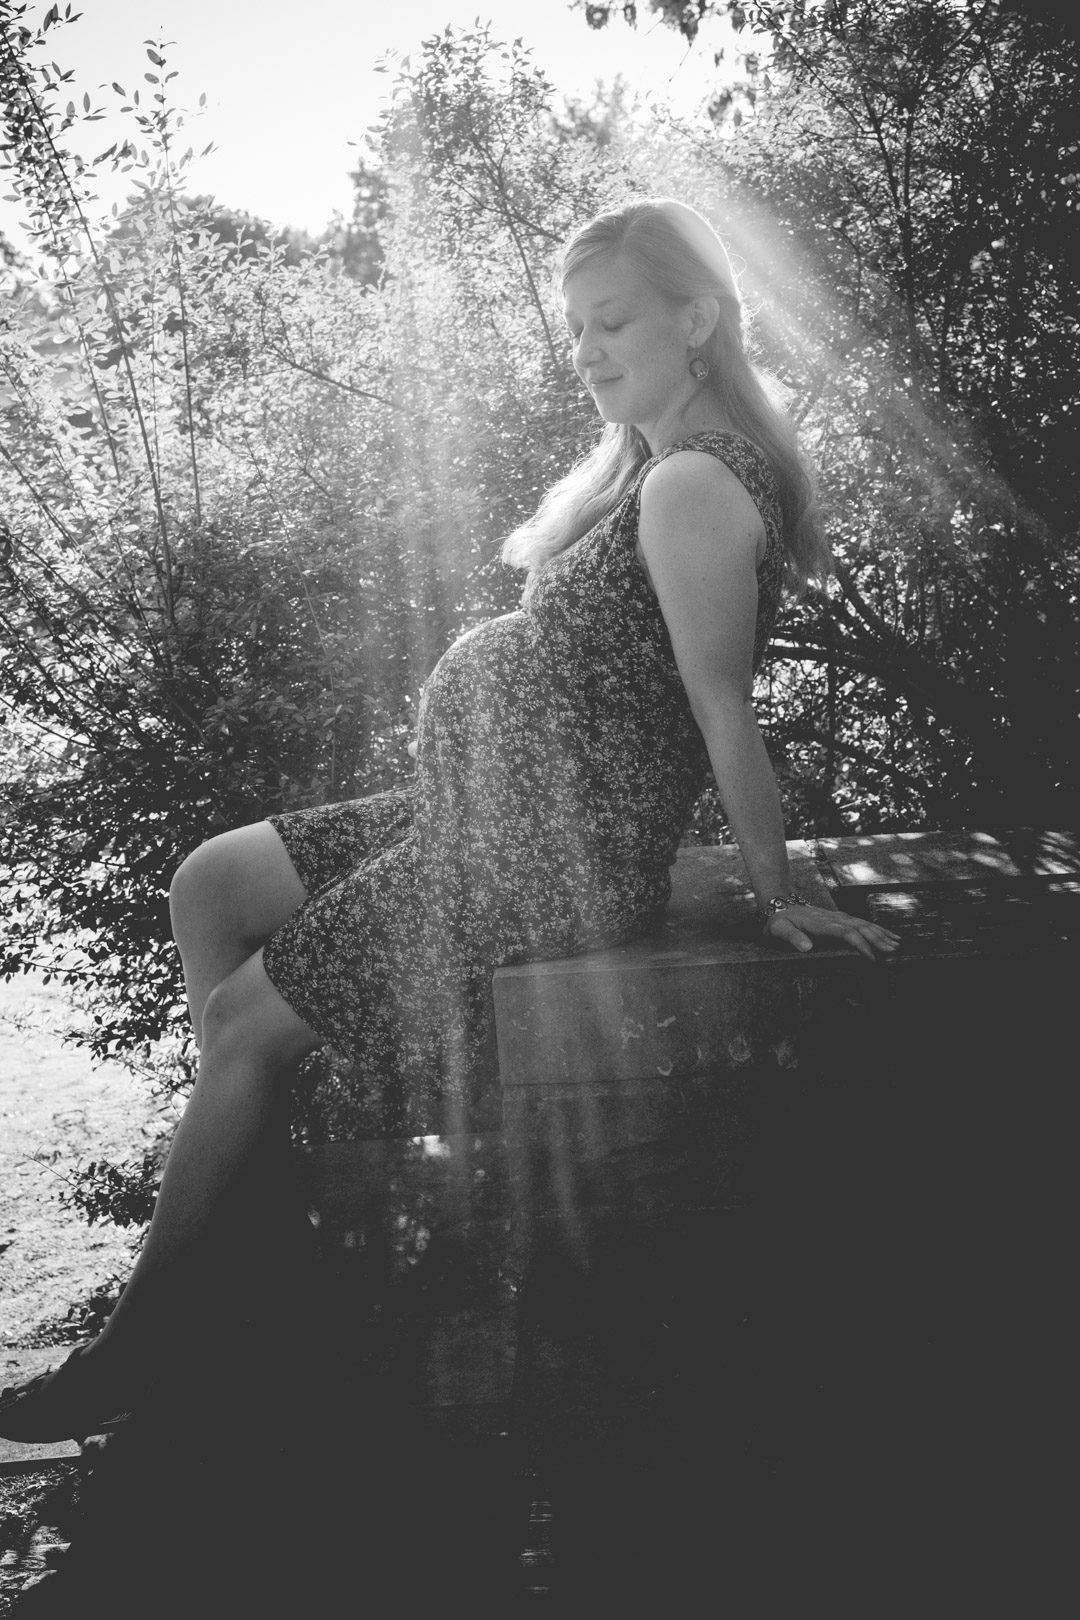 Familienfotograf Berlin Schwangerschaftsfotos: Babybauchfoto auf Insel der Jugend Berlin-Treptow. Werdende Mutter sitzt auf Stein im Gegenlicht